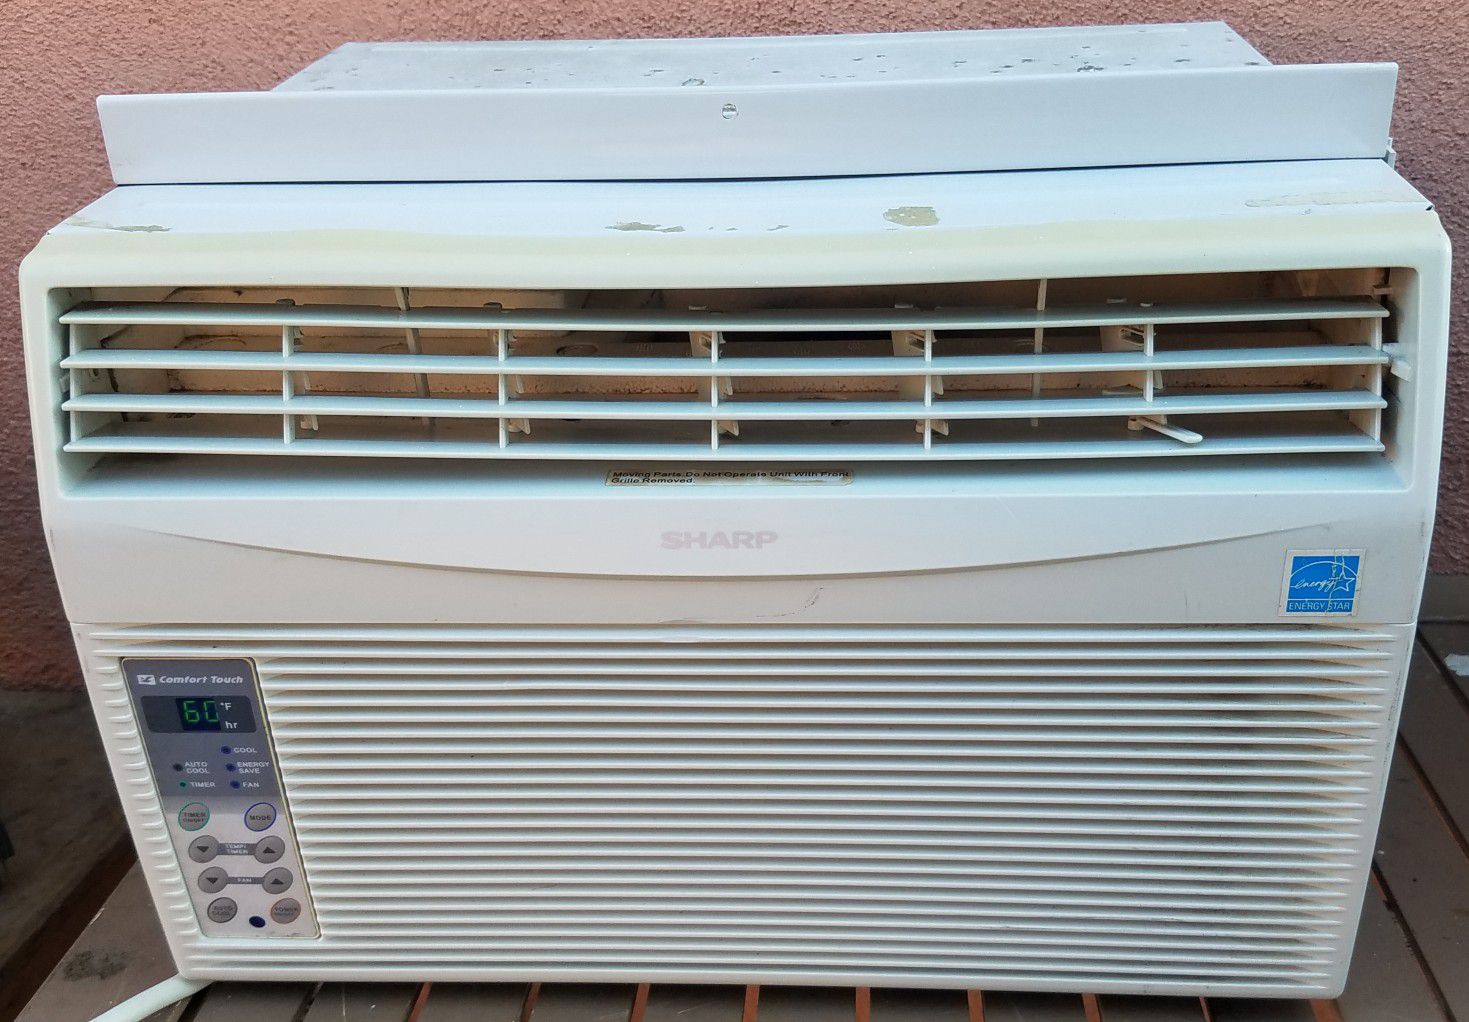 Air conditioner 8,000 btus